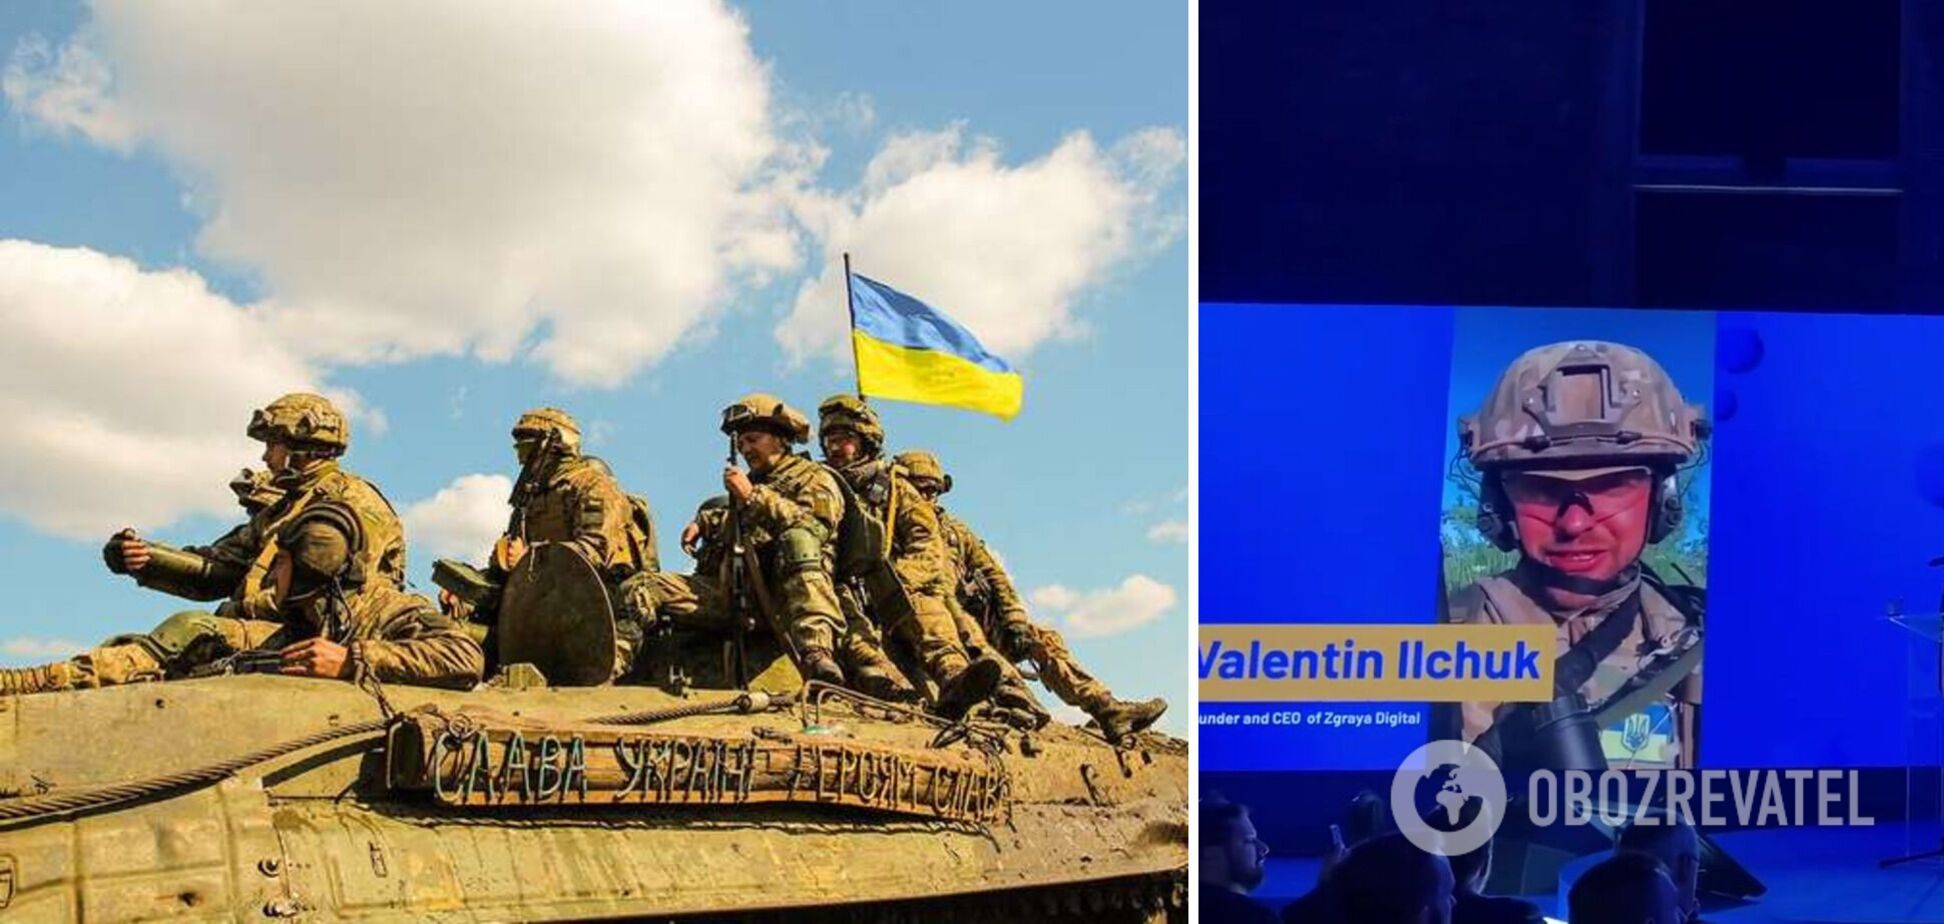 Защитник Украины выступил на открытии Latitude59 в Таллине и рассказал, за что сражается страна. Видео